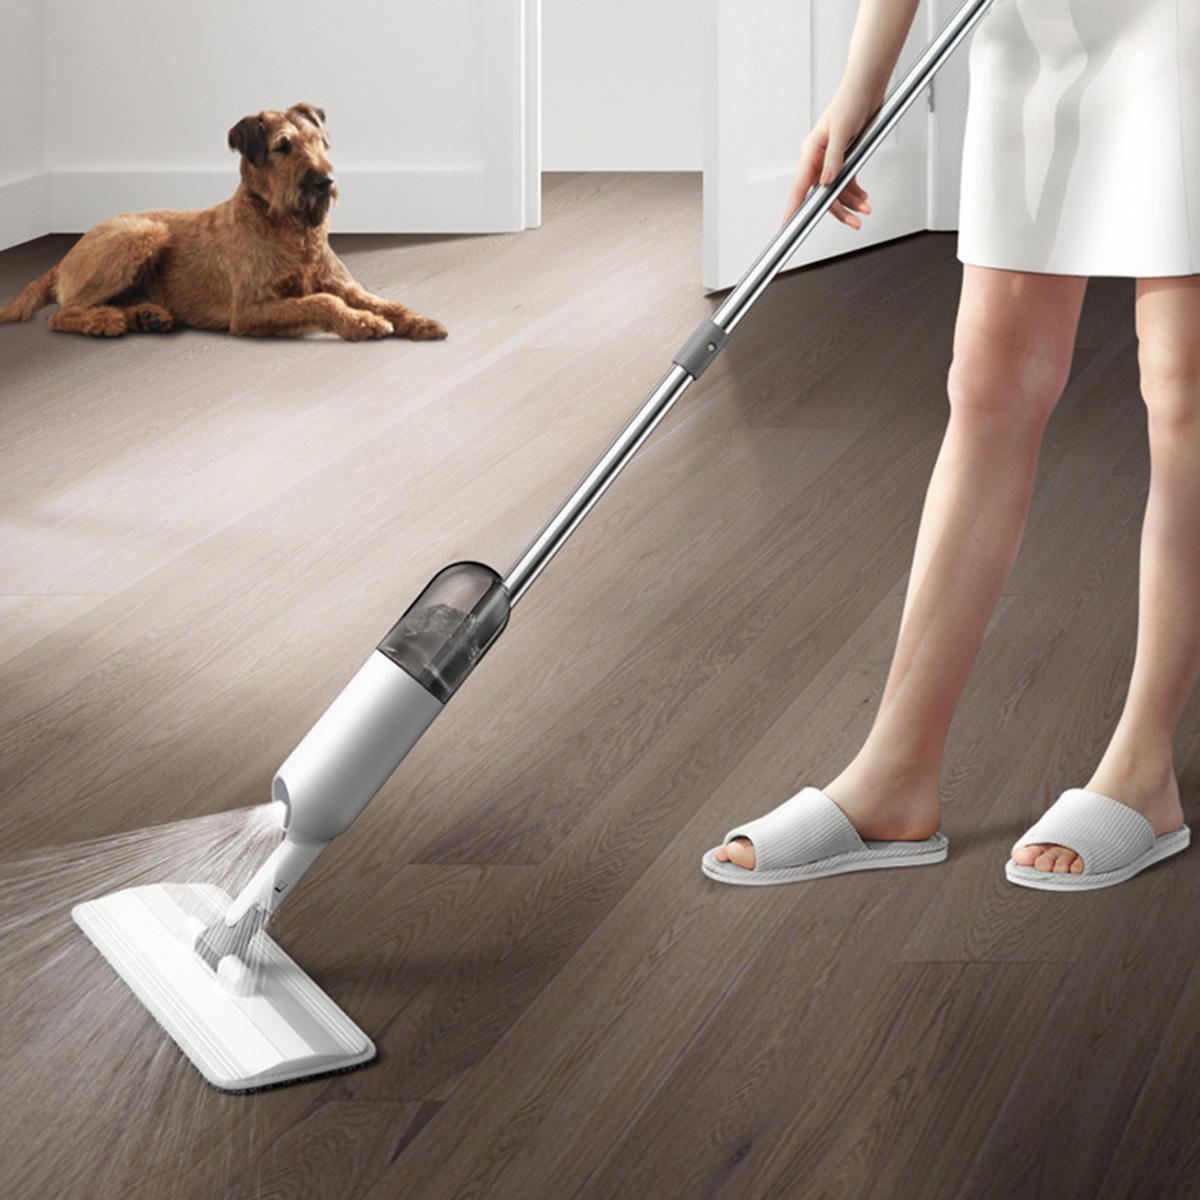 

Микрофибра Spray Mop Cleaner Набор Домашняя пыль для пола Швабра Наборchen Ванная комната